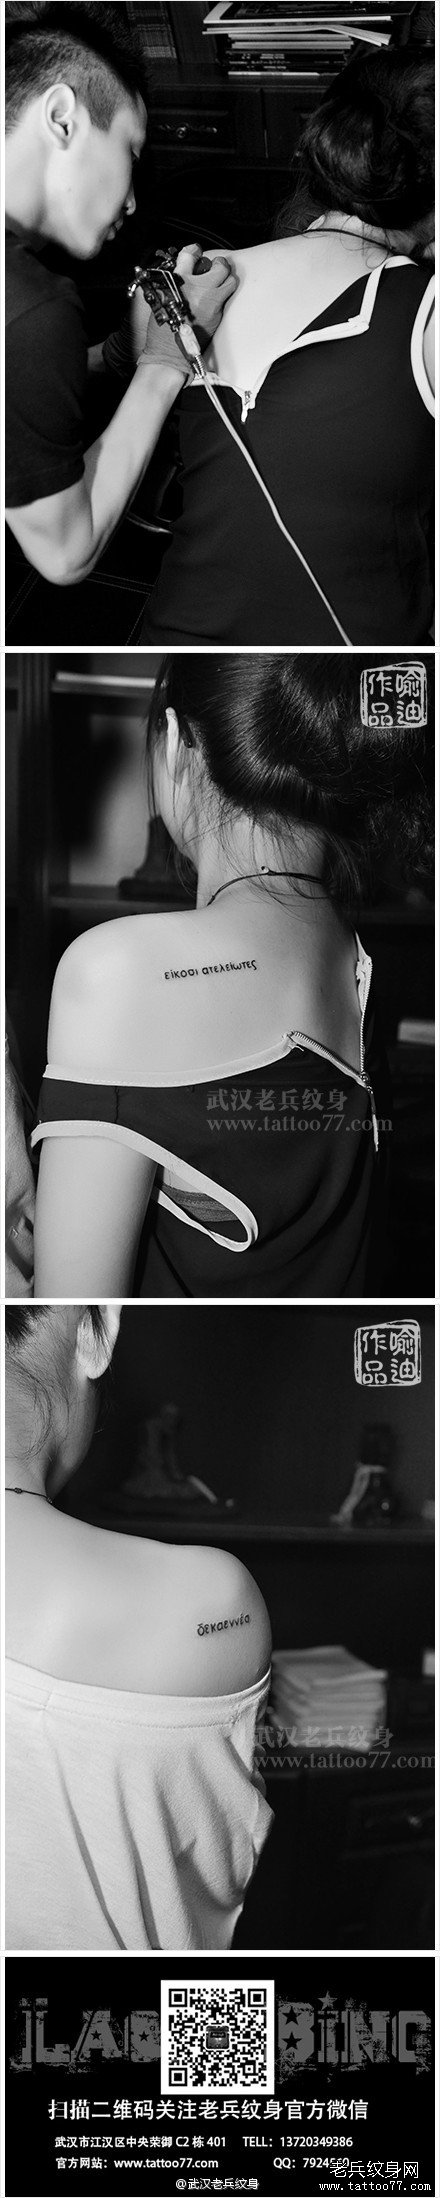 武汉纹身店纹身师喻迪为一对好姐妹打造的后背字母纹身图案作品